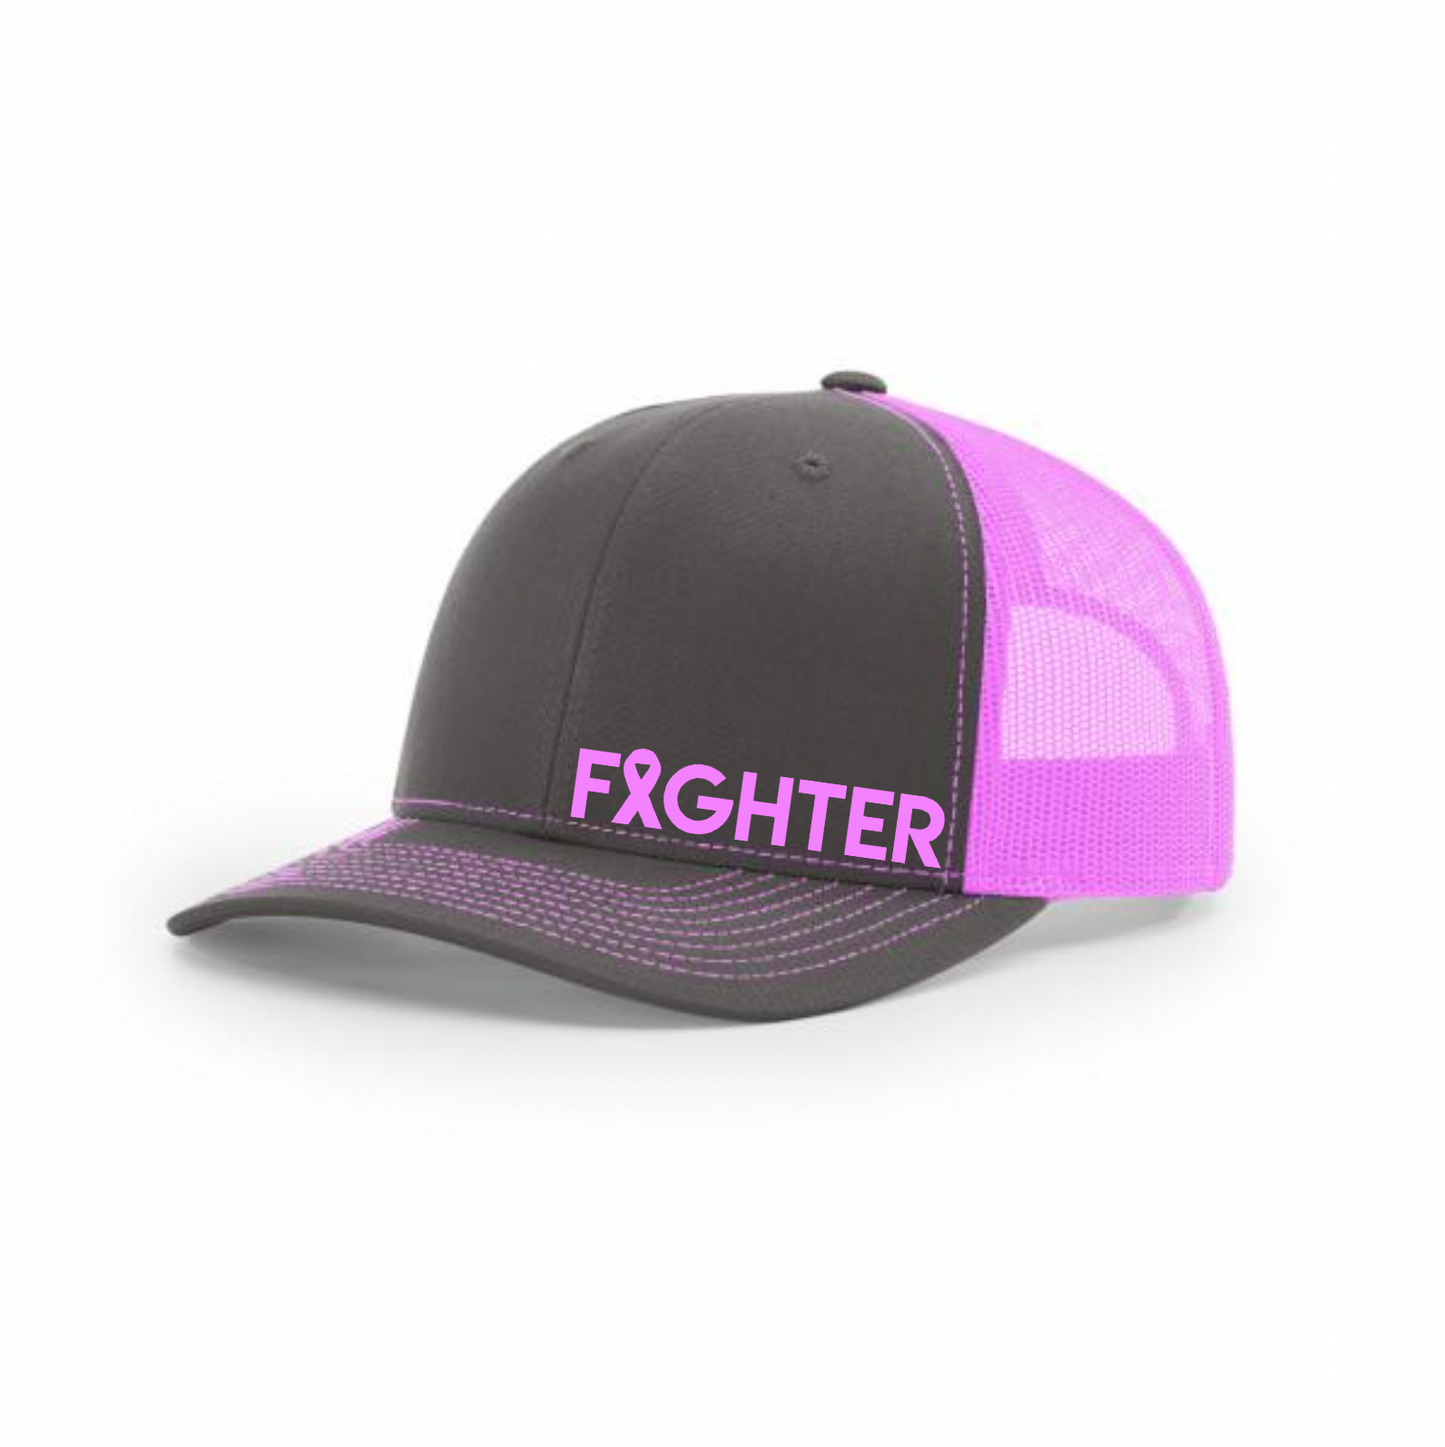 Fighter Ribbon Richardson 112 Trucker Mesh Back Hat